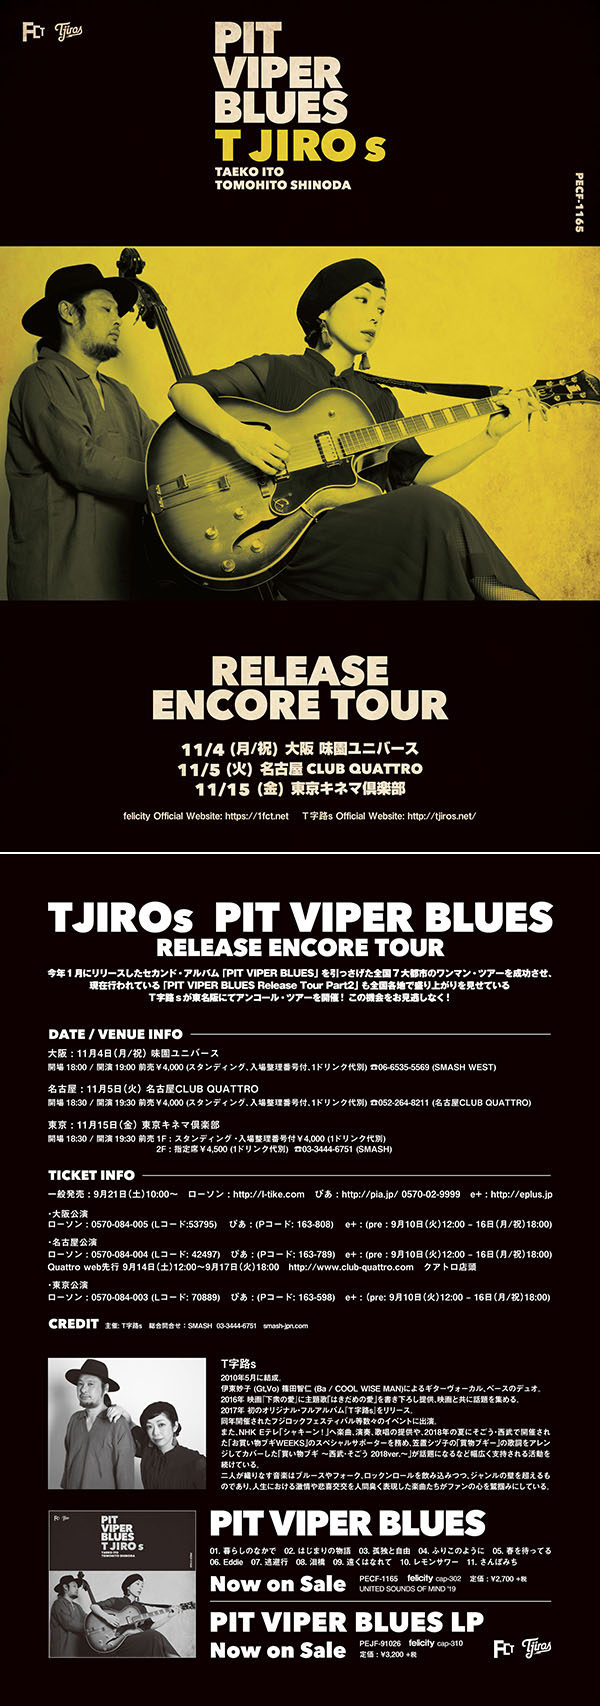 PIT VIPER BLUES Release Encore Tour